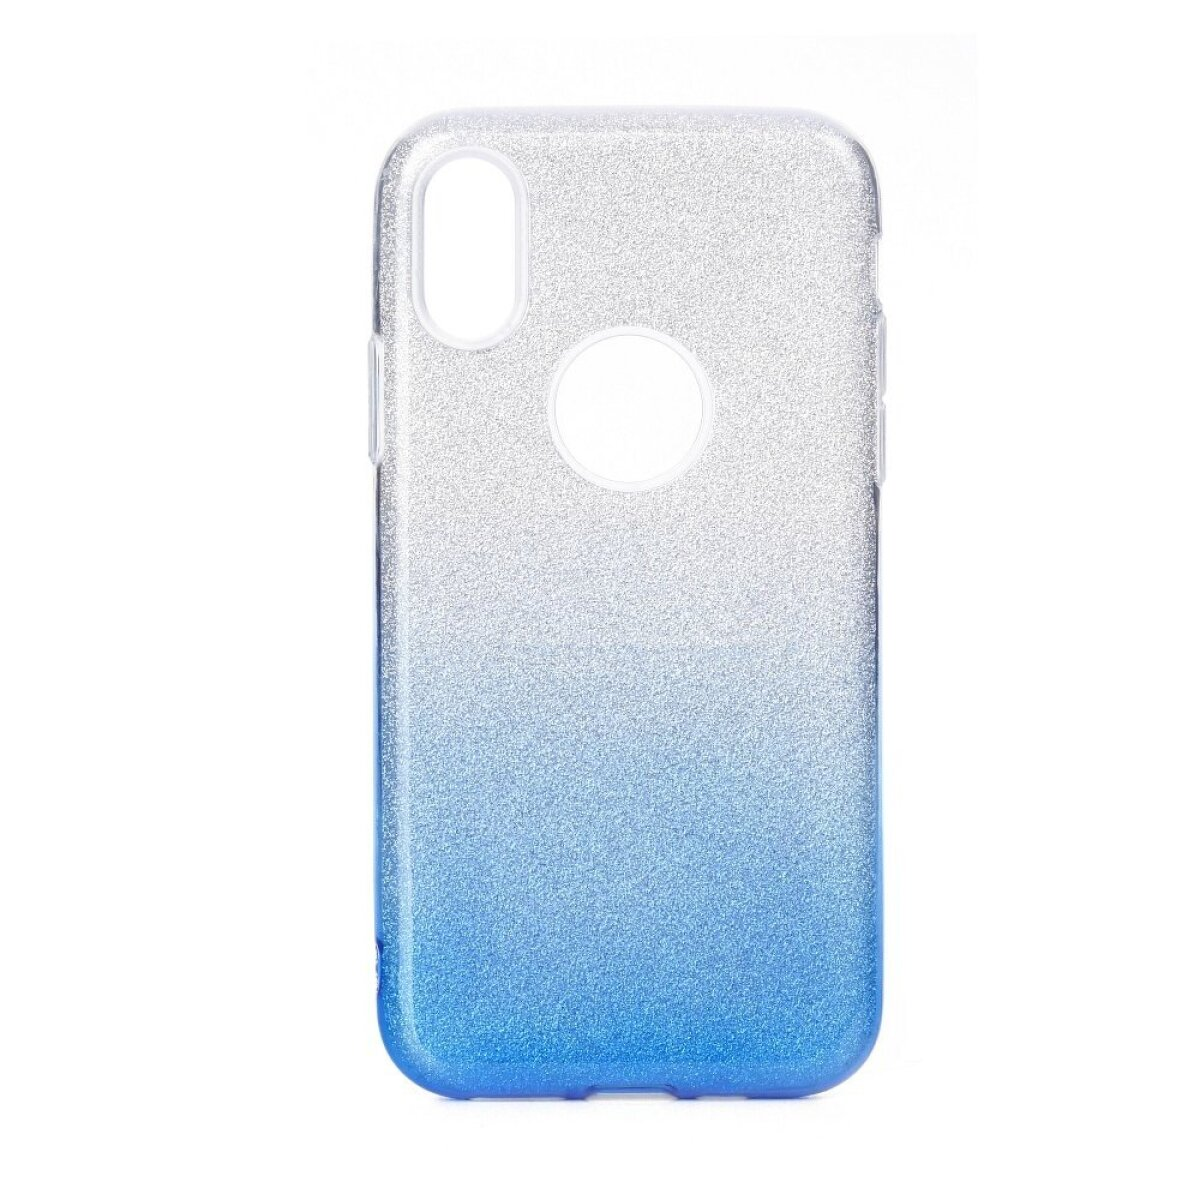 Galaxy Samsung, transparent/blau, A71, Cover, Full FORCELL Blau Galaxy SHINING A71